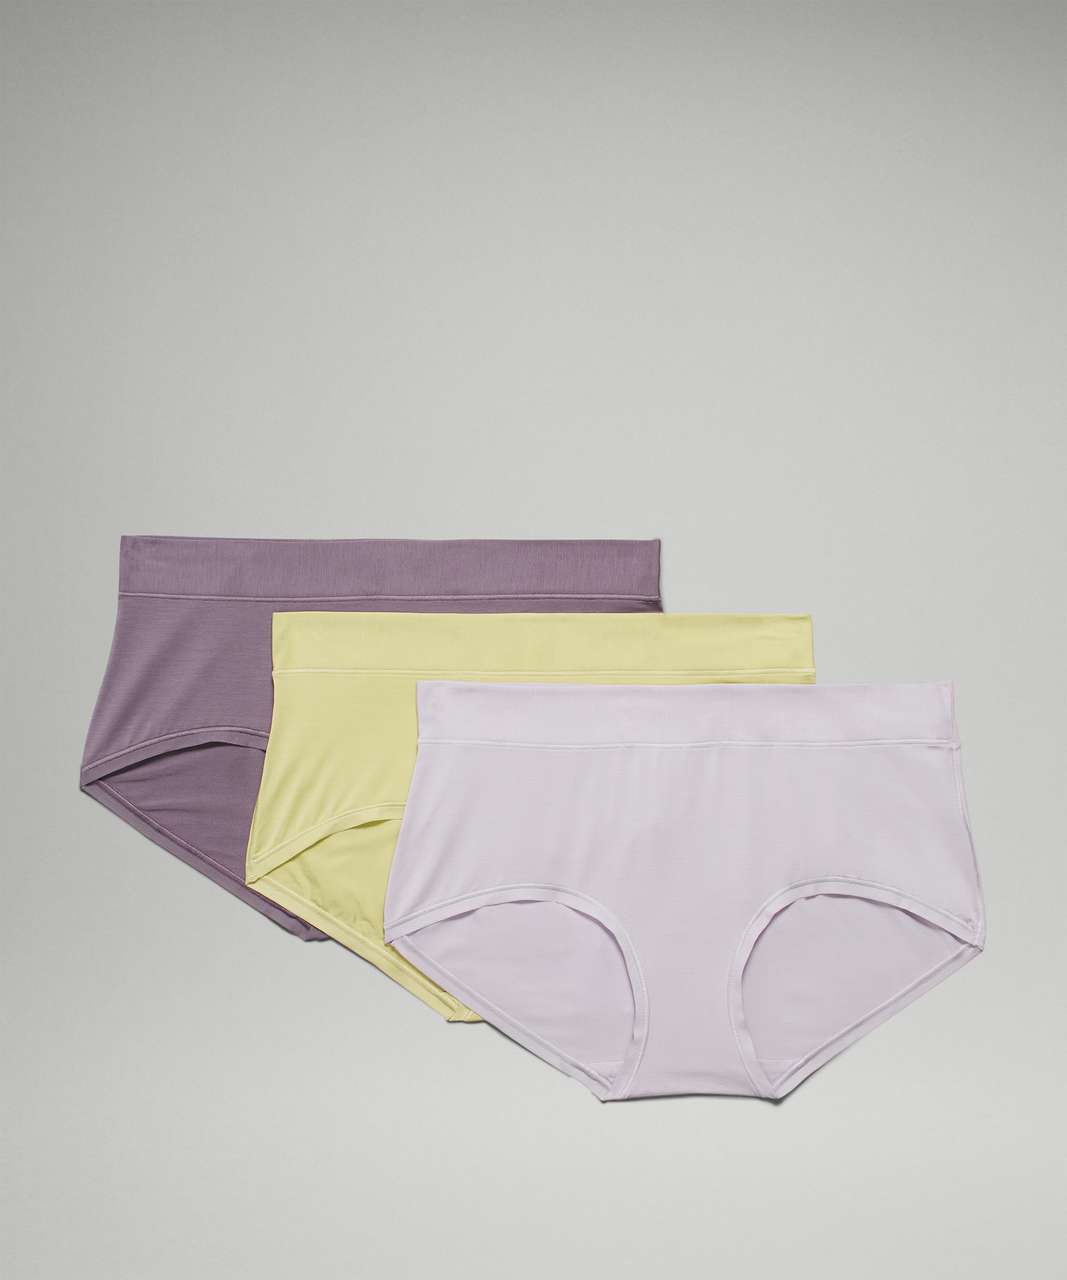 Lululemon UnderEase Mid Rise Boyshort Underwear 3 Pack - Chrome